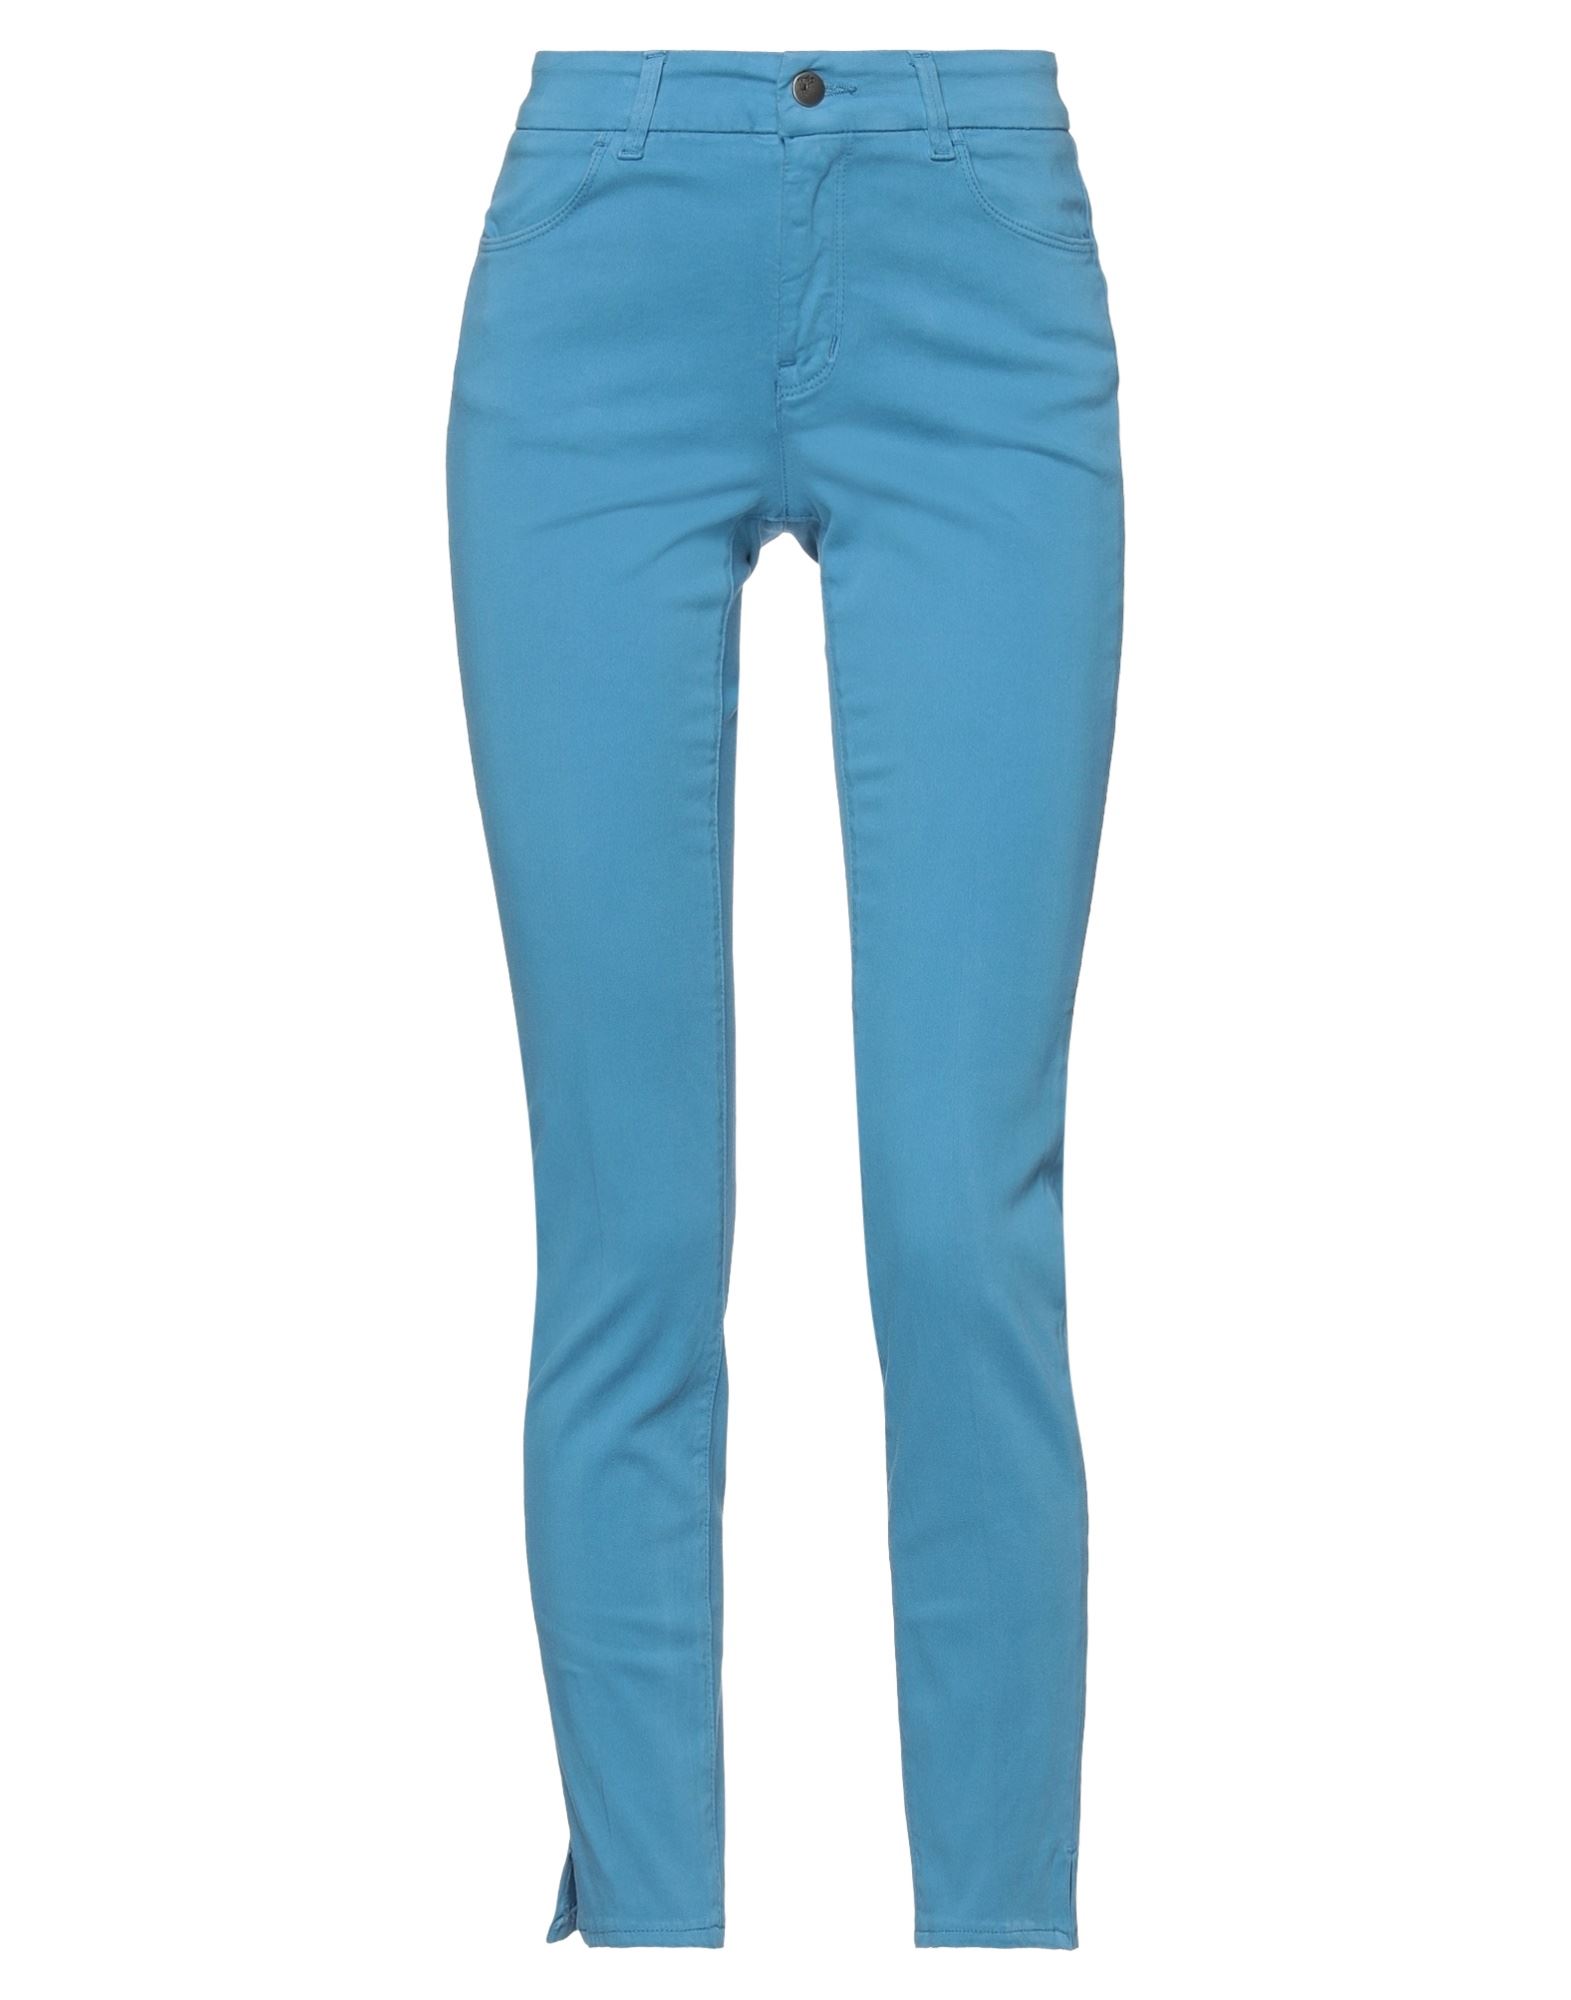 Cigala's Pants In Blue